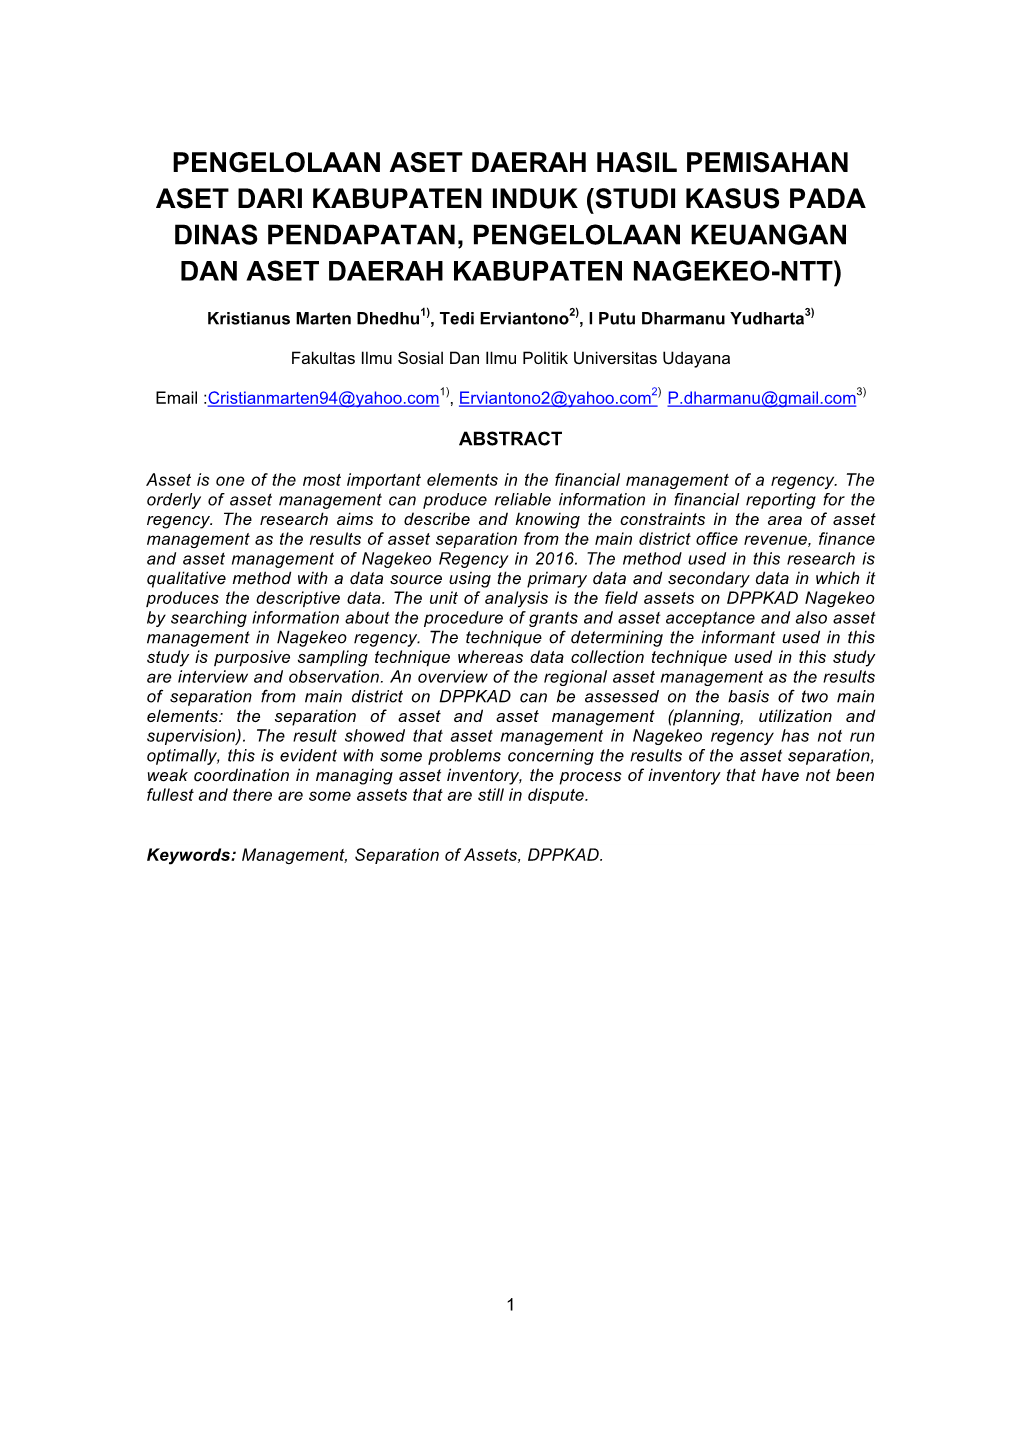 Pengelolaan Aset Daerah Hasil Pemisahan Aset Dari Kabupaten Induk (Studi Kasus Pada Dinas Pendapatan, Pengelolaan Keuangan Dan Aset Daerah Kabupaten Nagekeo-Ntt)